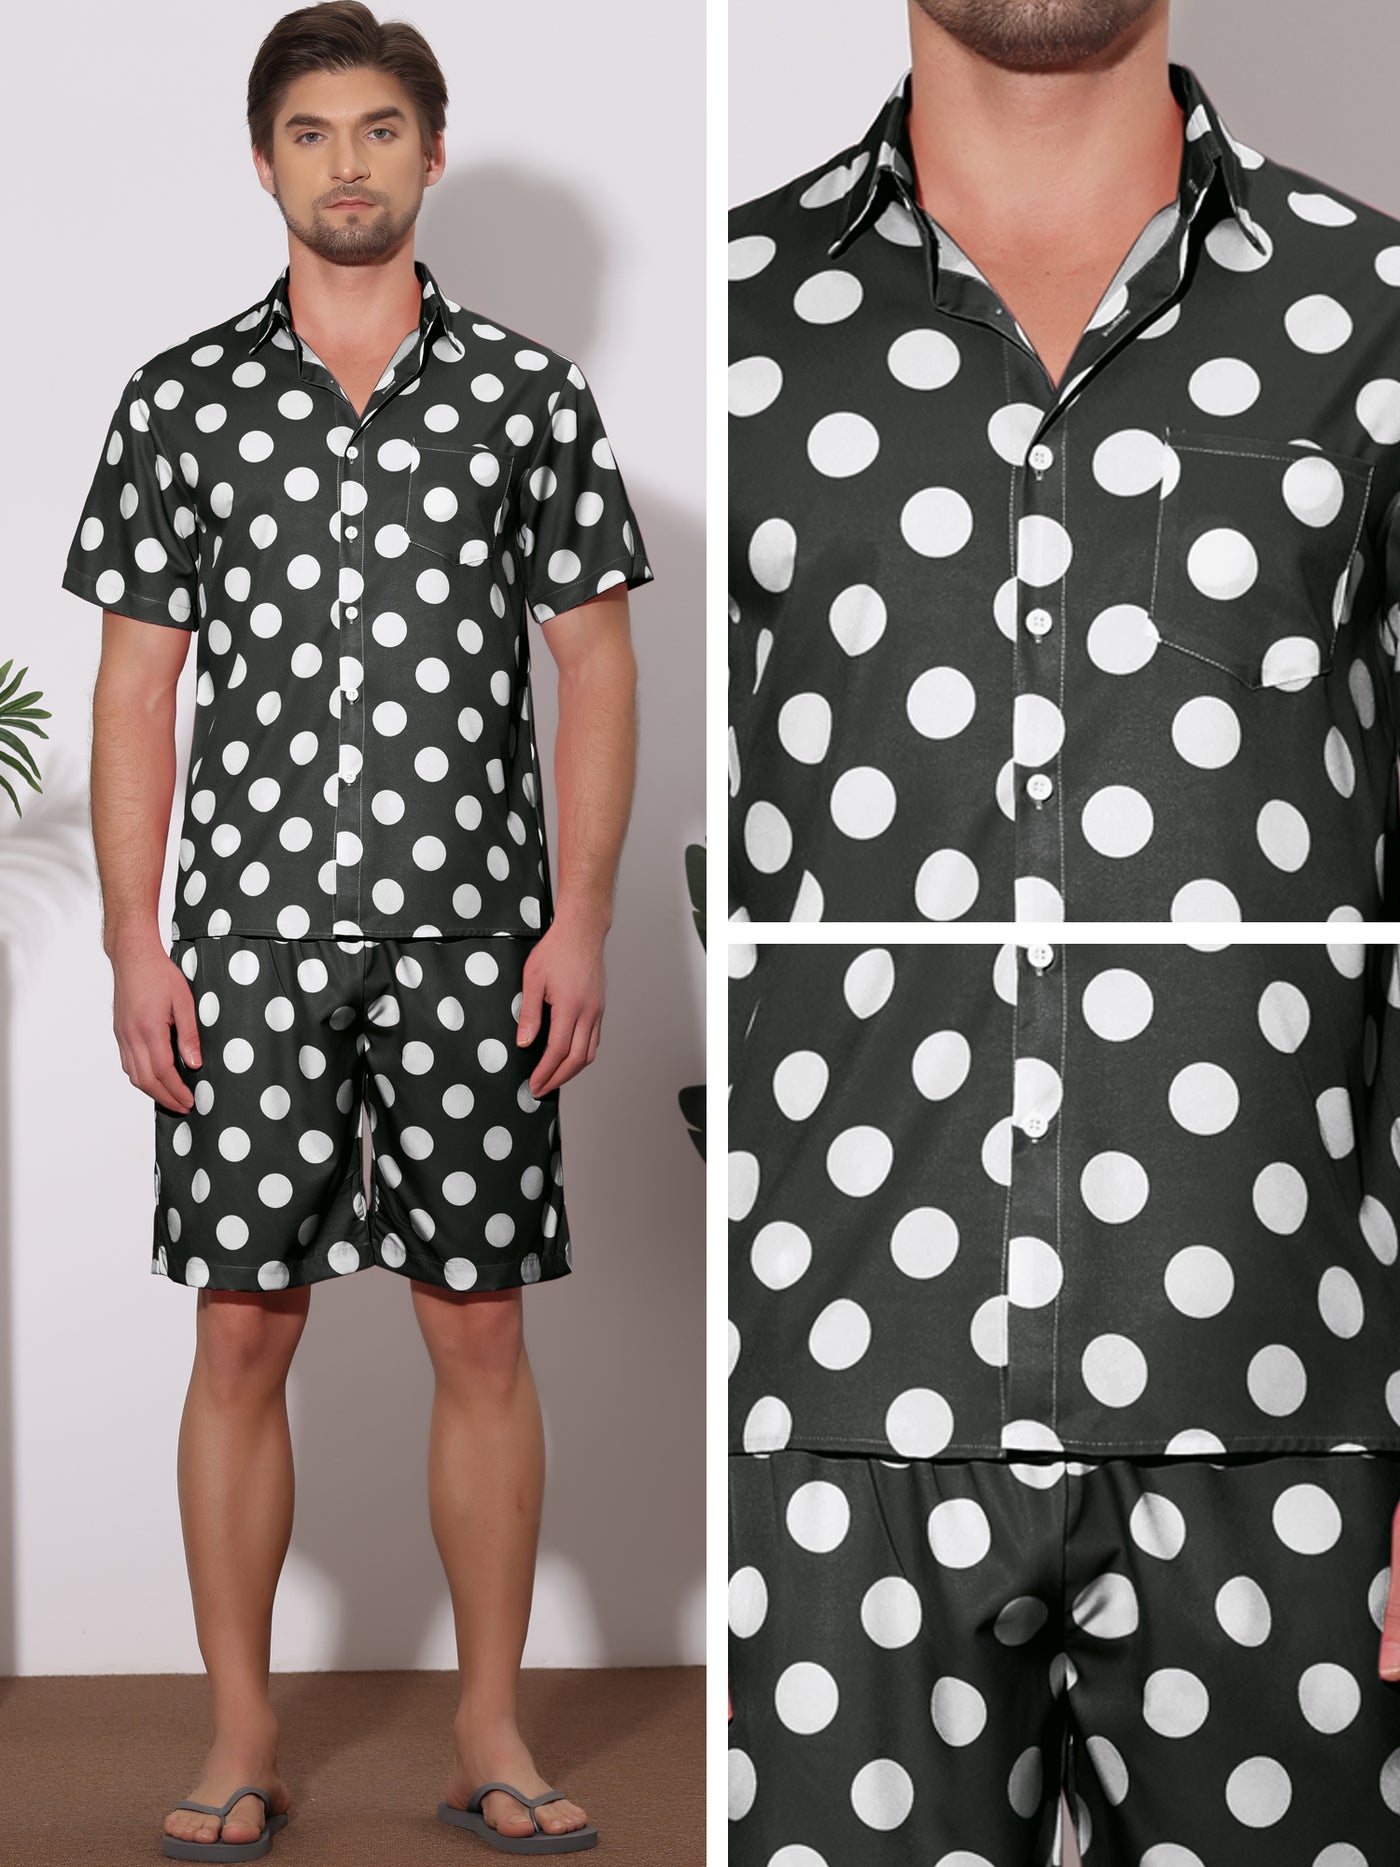 Bublédon Polka Dots Hawaiian Sets for Men's Short Sleeves Shirts Shorts Summer 2 Pieces Set